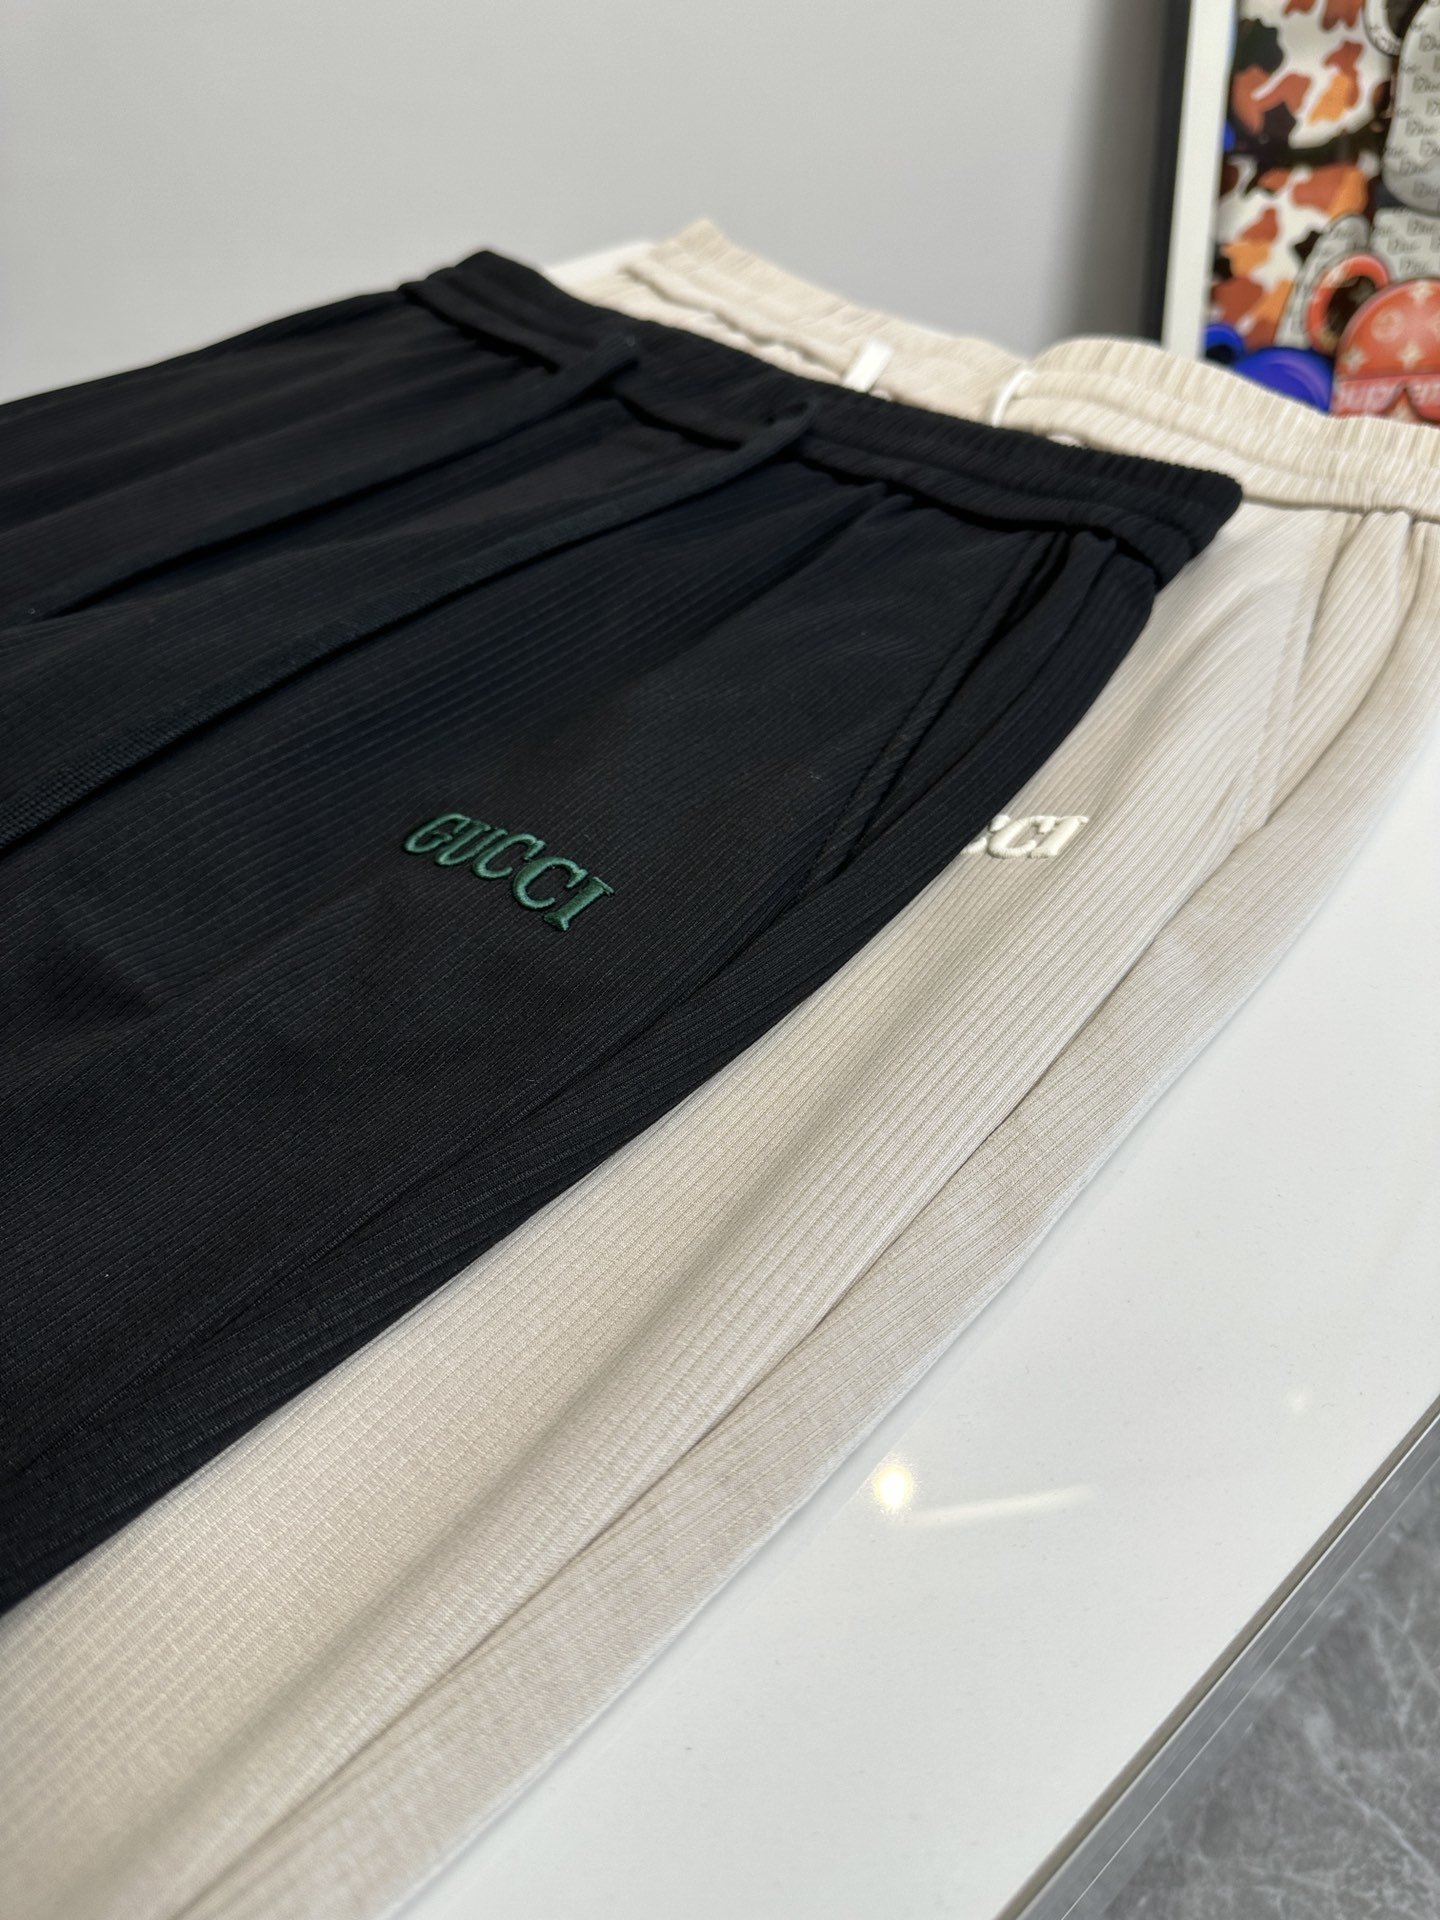 欧货G古家-234ss春夏新款进口纯棉质地复合面料再见基础款帅气卫裤.....一线时尚品牌出色独到的设计